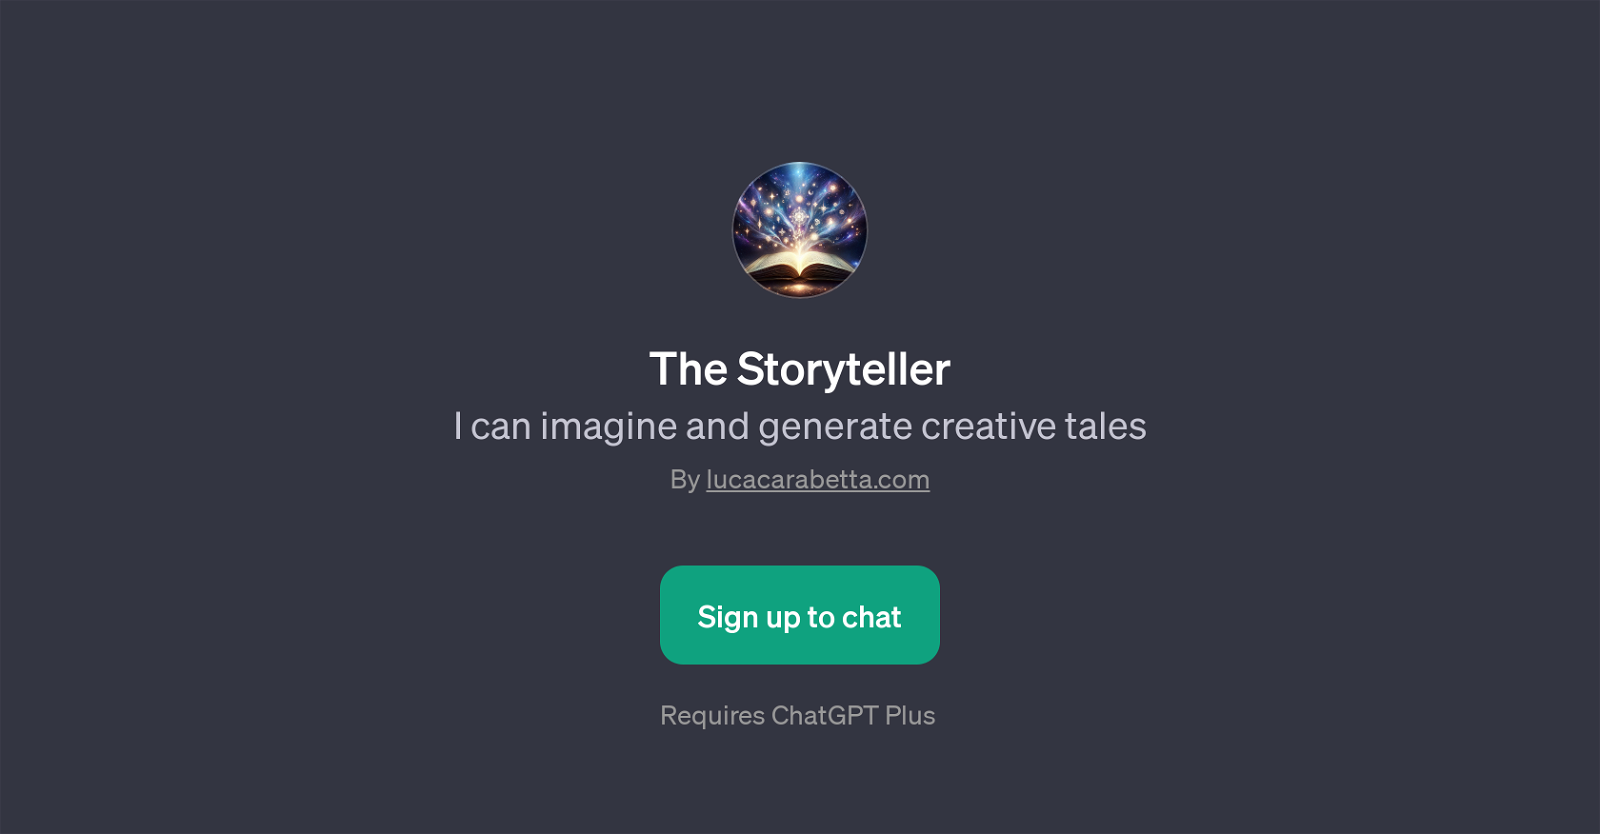 The Storyteller website